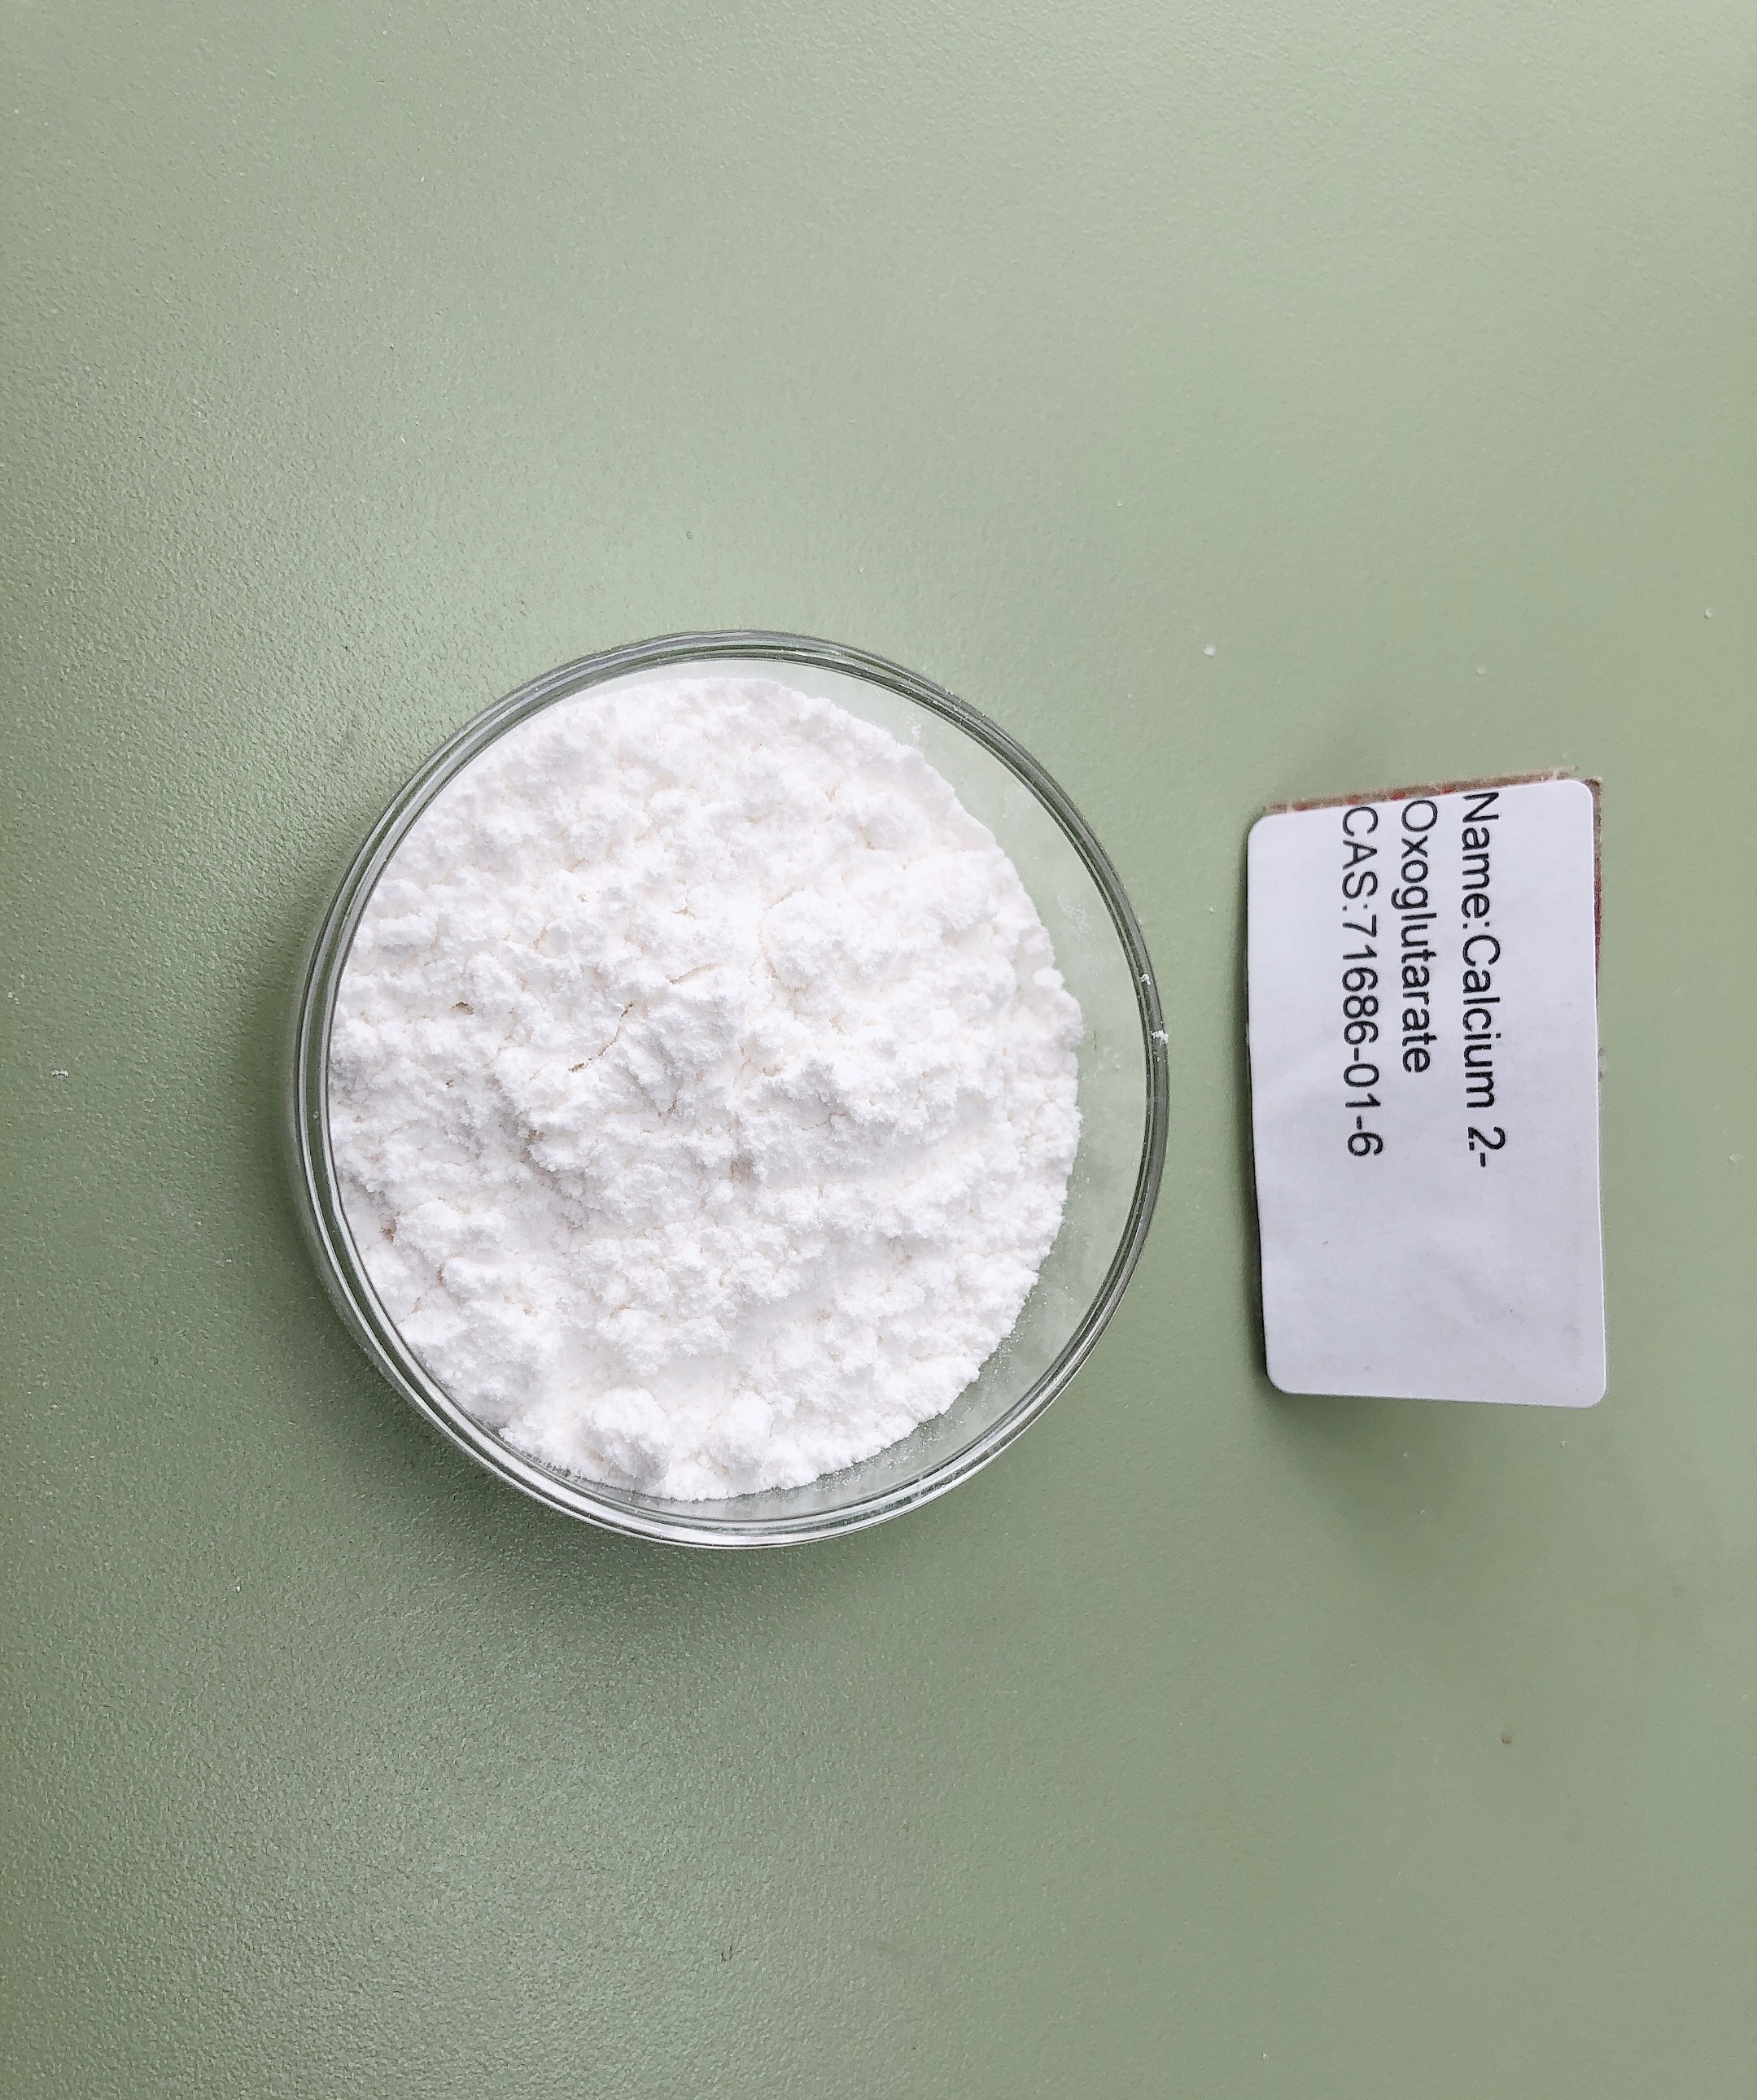 Calcium 2-Oxoglutarate 